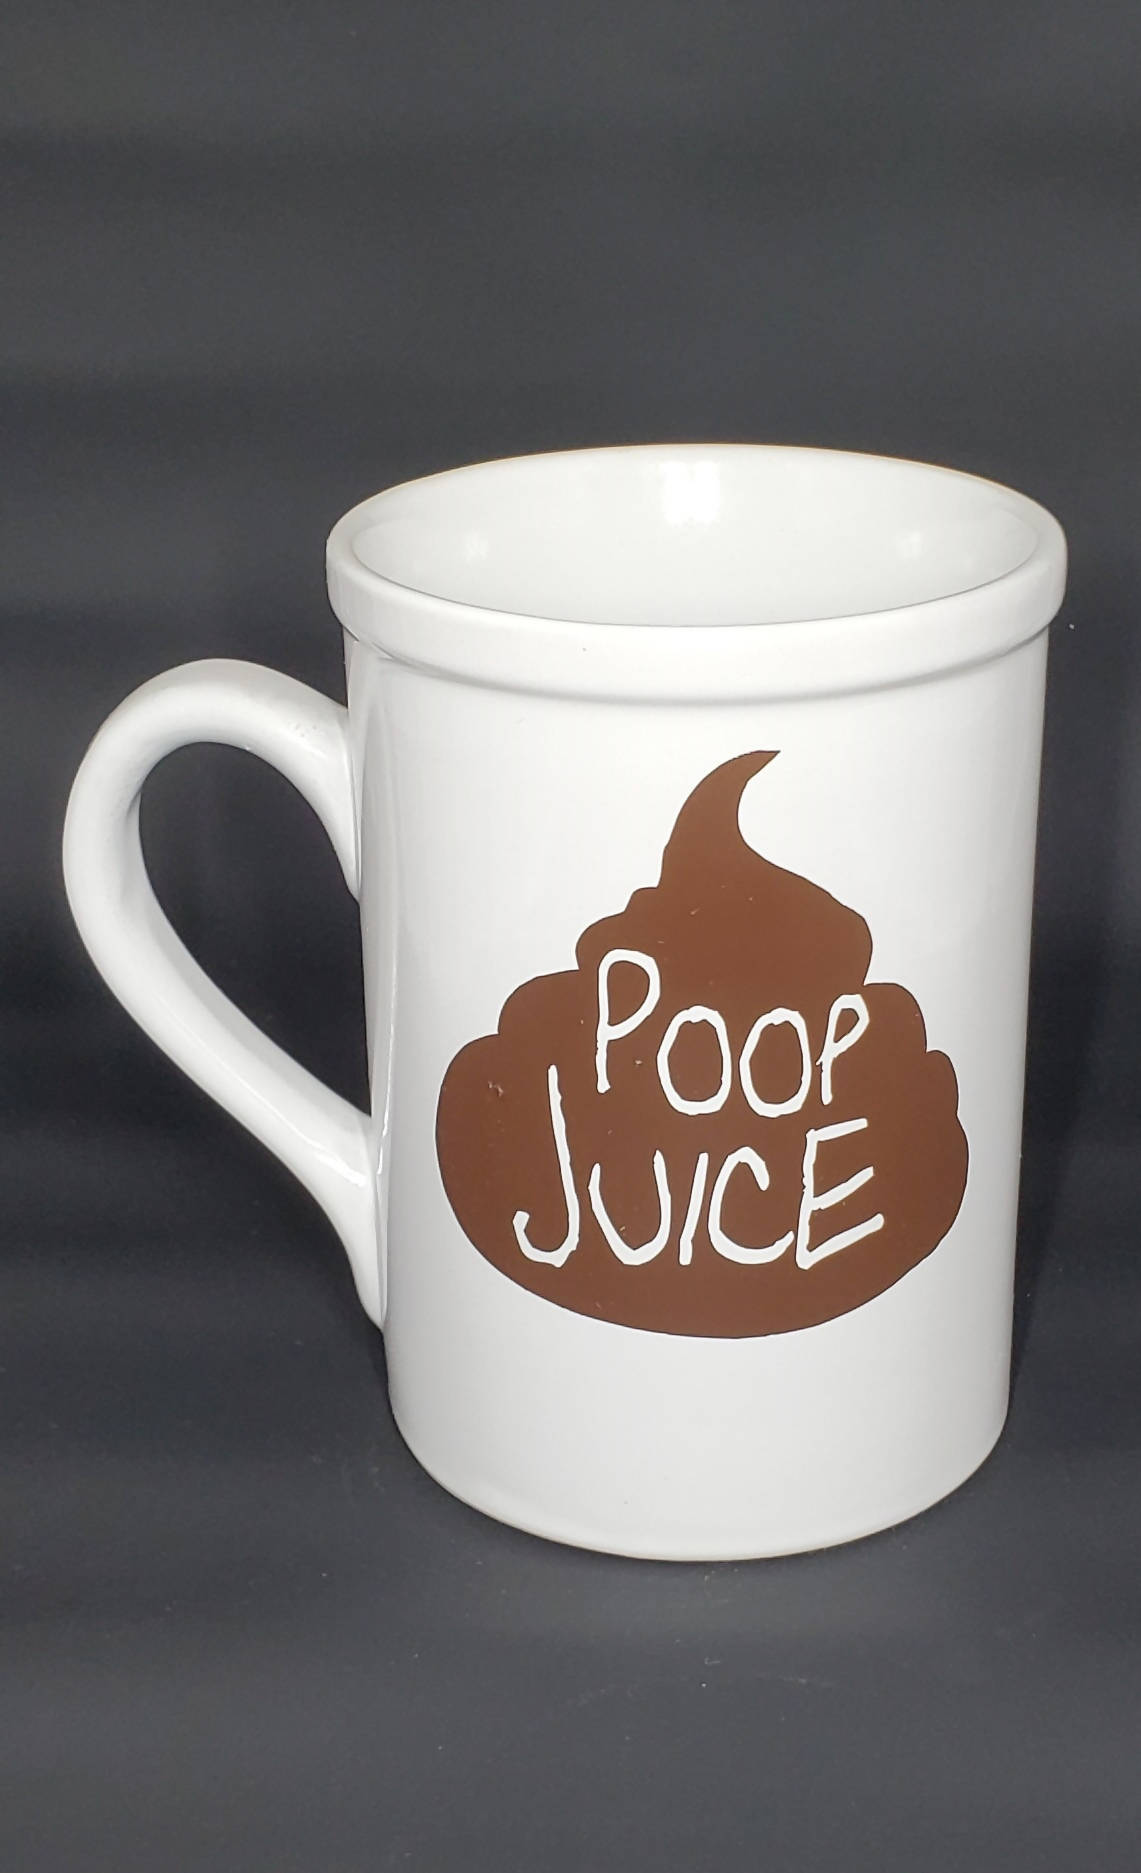 Poop Juice Coffee Mug